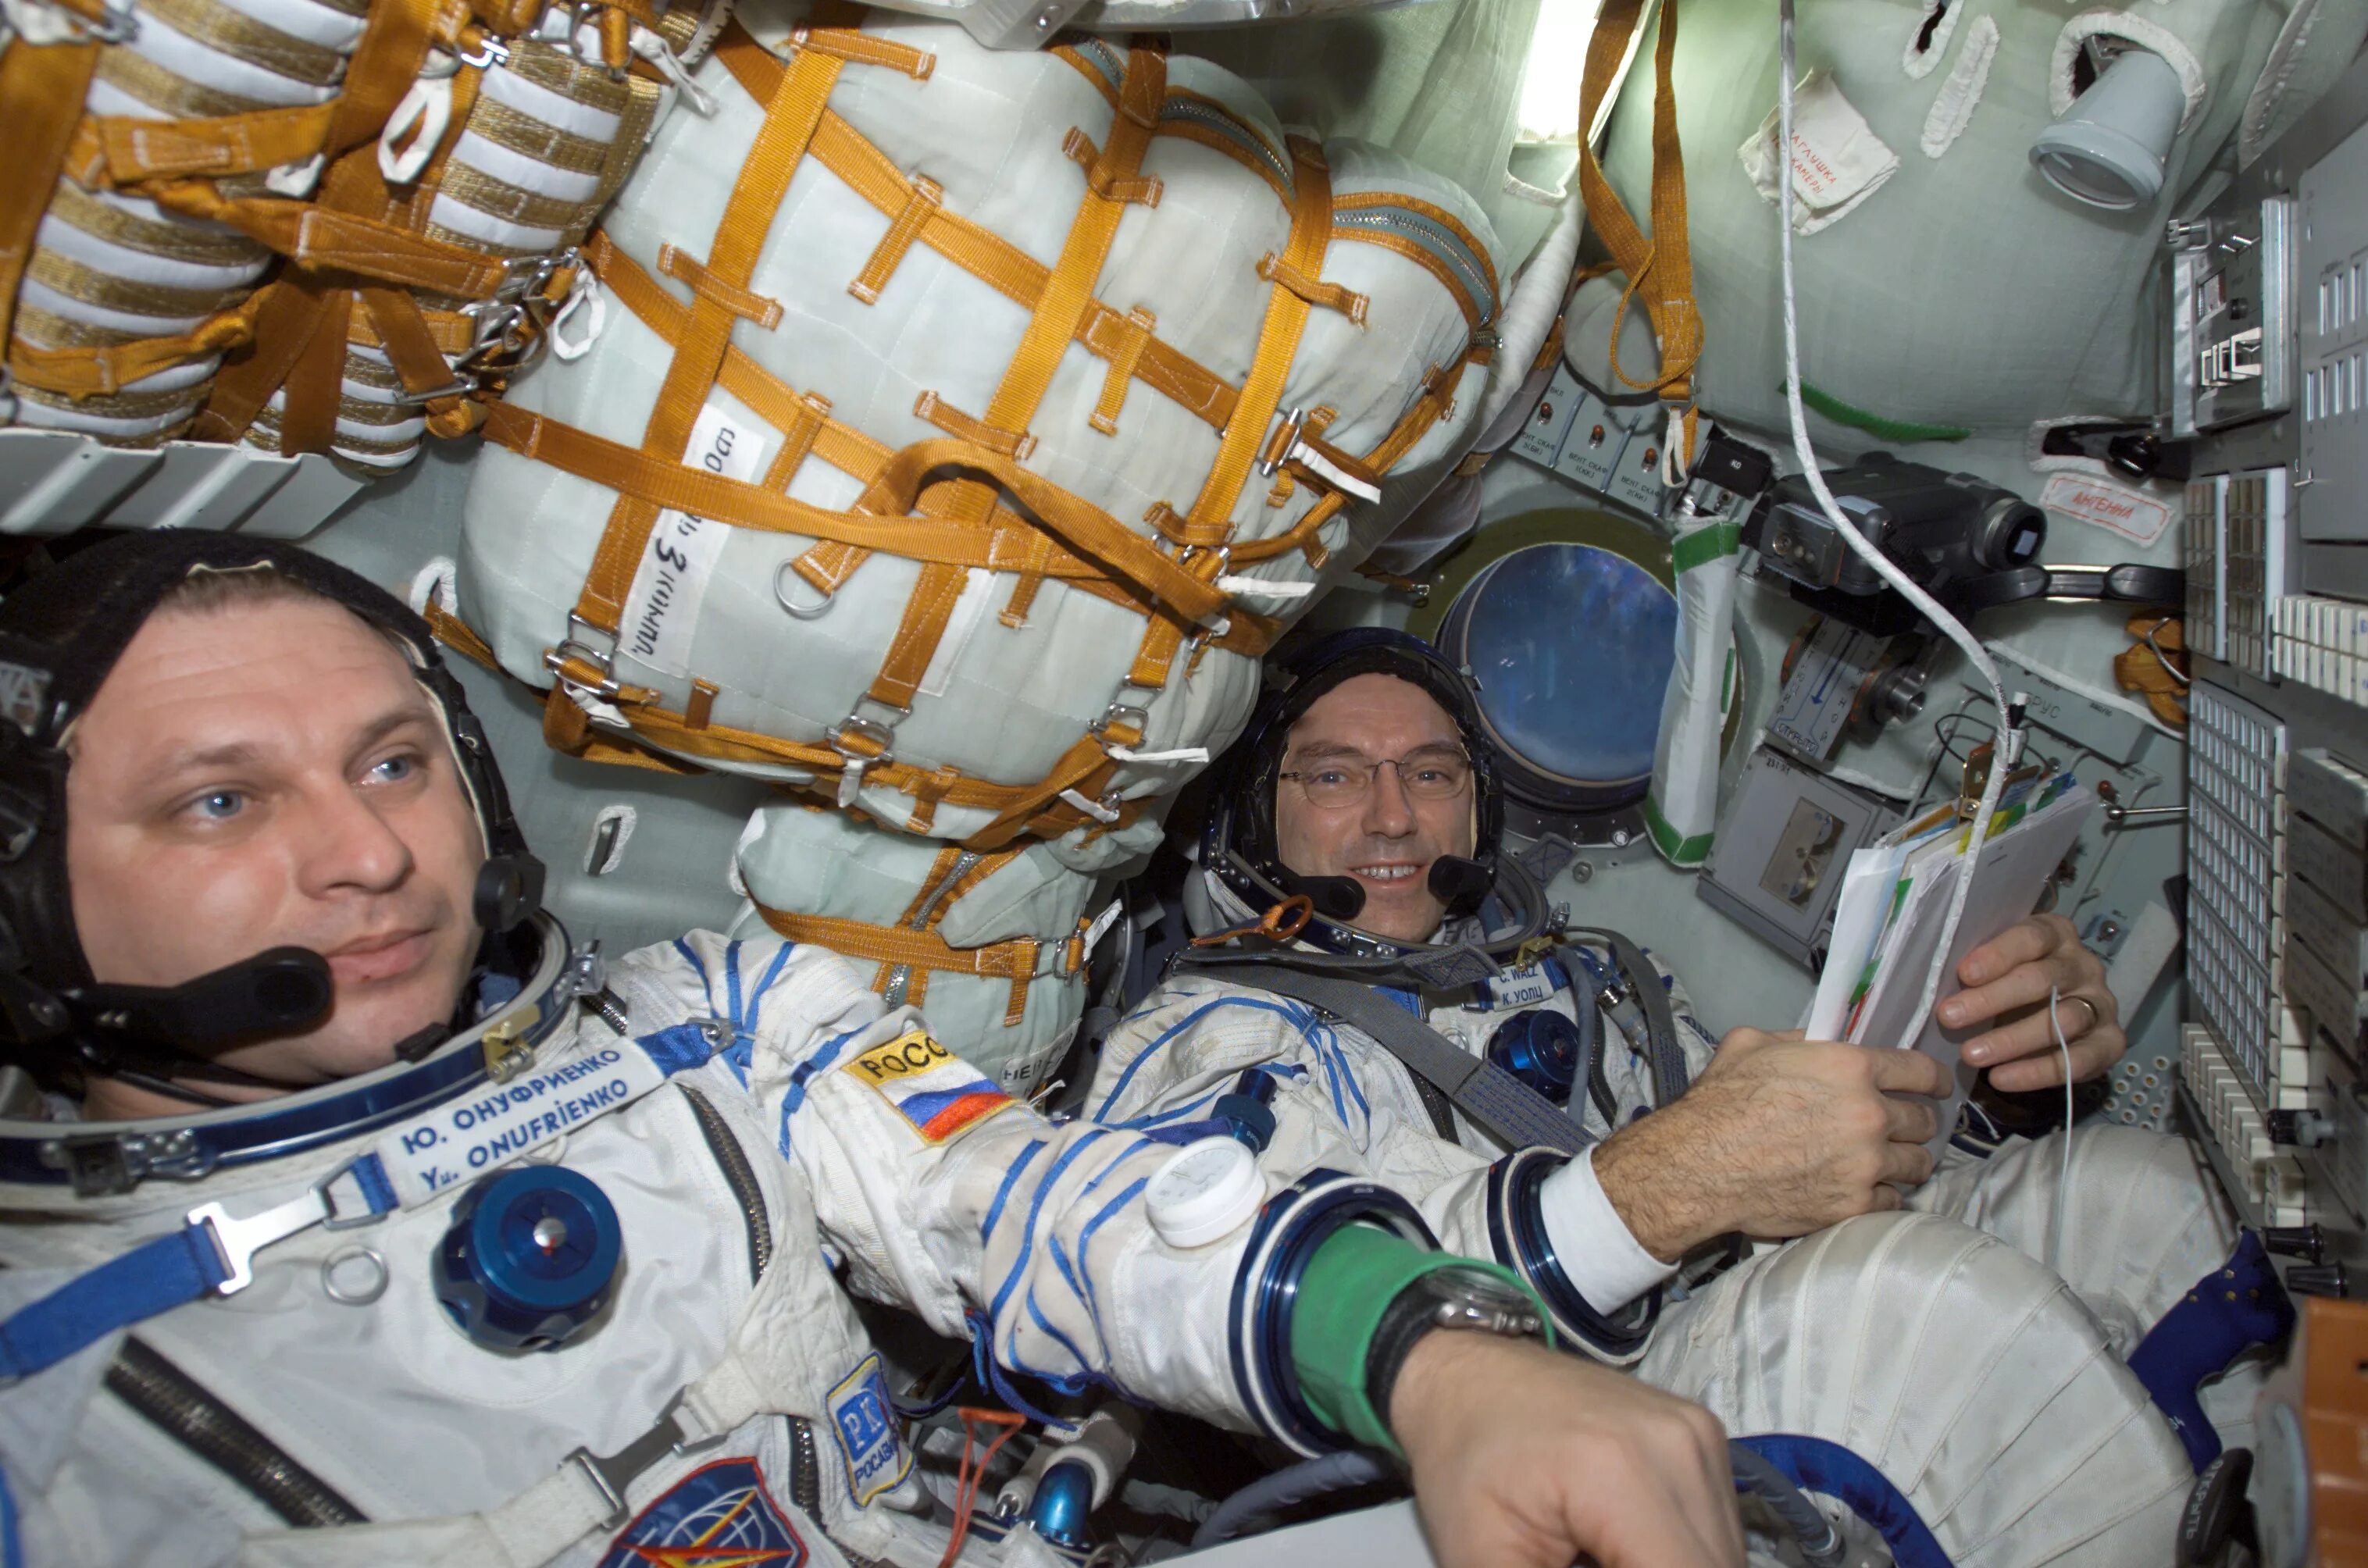 Занимаются ли космонавты. Онуфриенко космонавт. Союз МС 04 Юрчихин корабль внутри. Космонавт в космосе.